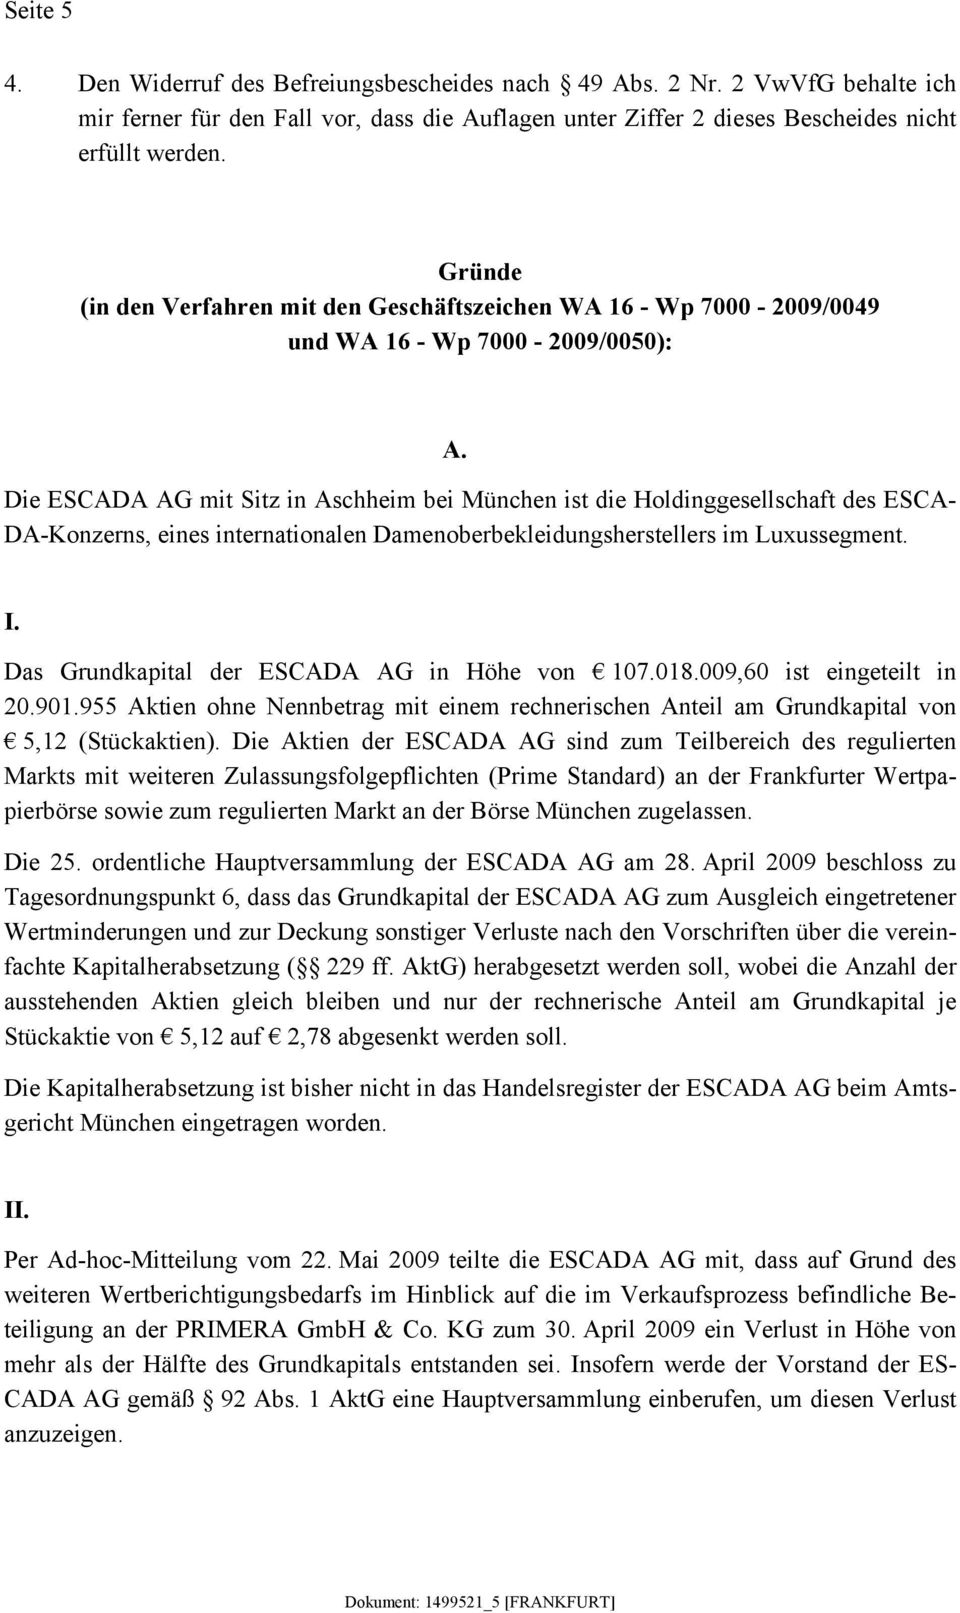 Die ESCADA AG mit Sitz in Aschheim bei München ist die Holdinggesellschaft des ESCA- DA-Konzerns, eines internationalen Damenoberbekleidungsherstellers im Luxussegment. I.